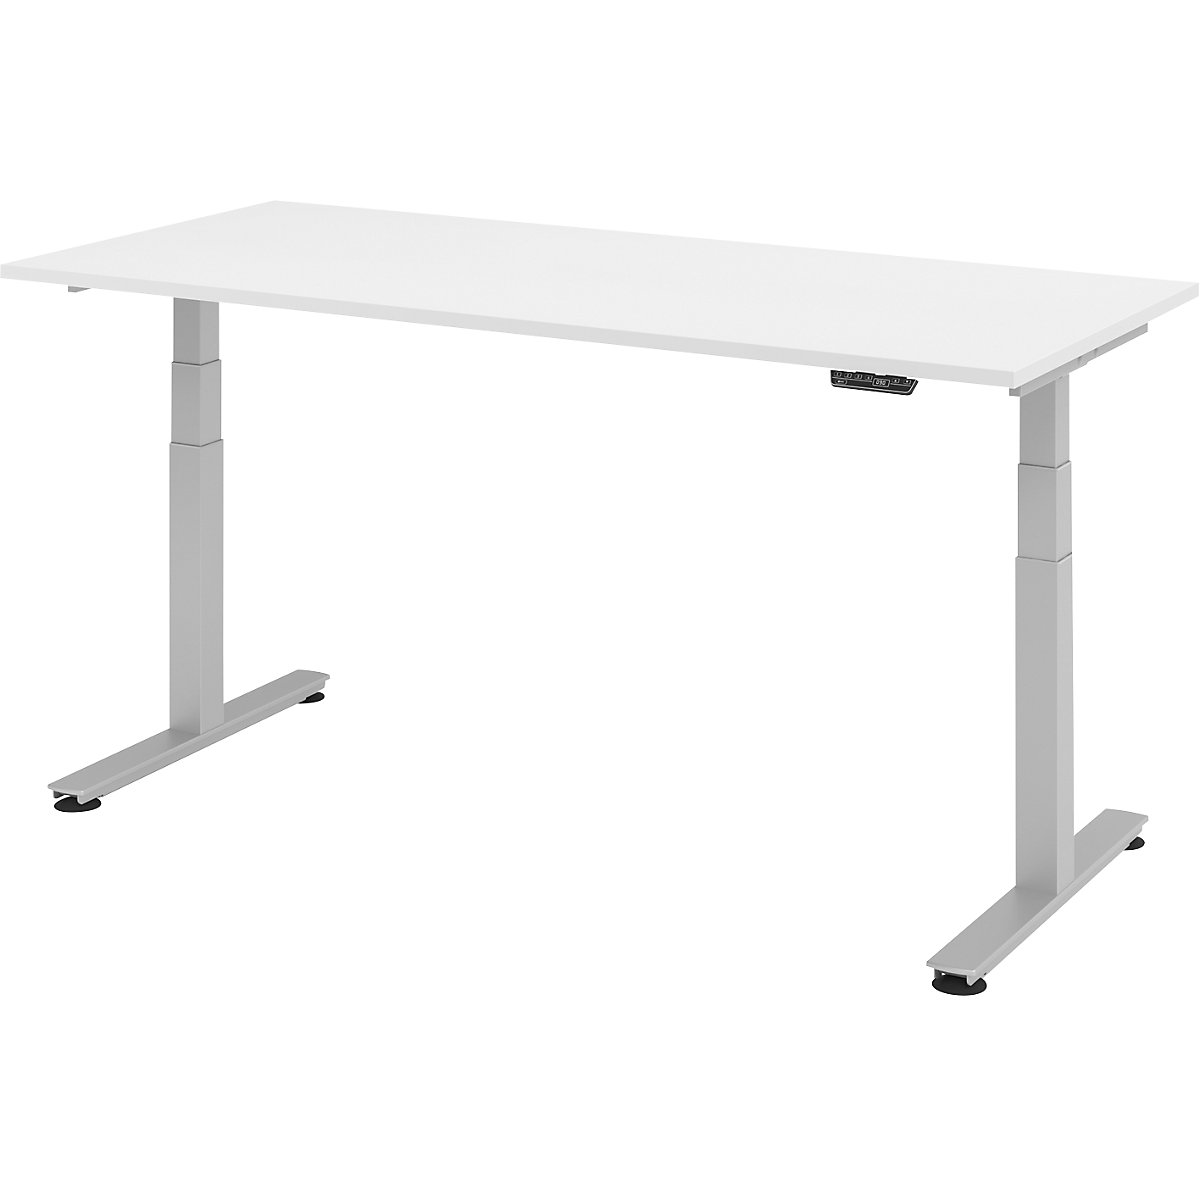 Sta-bureautafel, elektrisch in hoogte verstelbaar UPLINER-2.0, recht, b x d = 1800 x 800 mm, wit-14